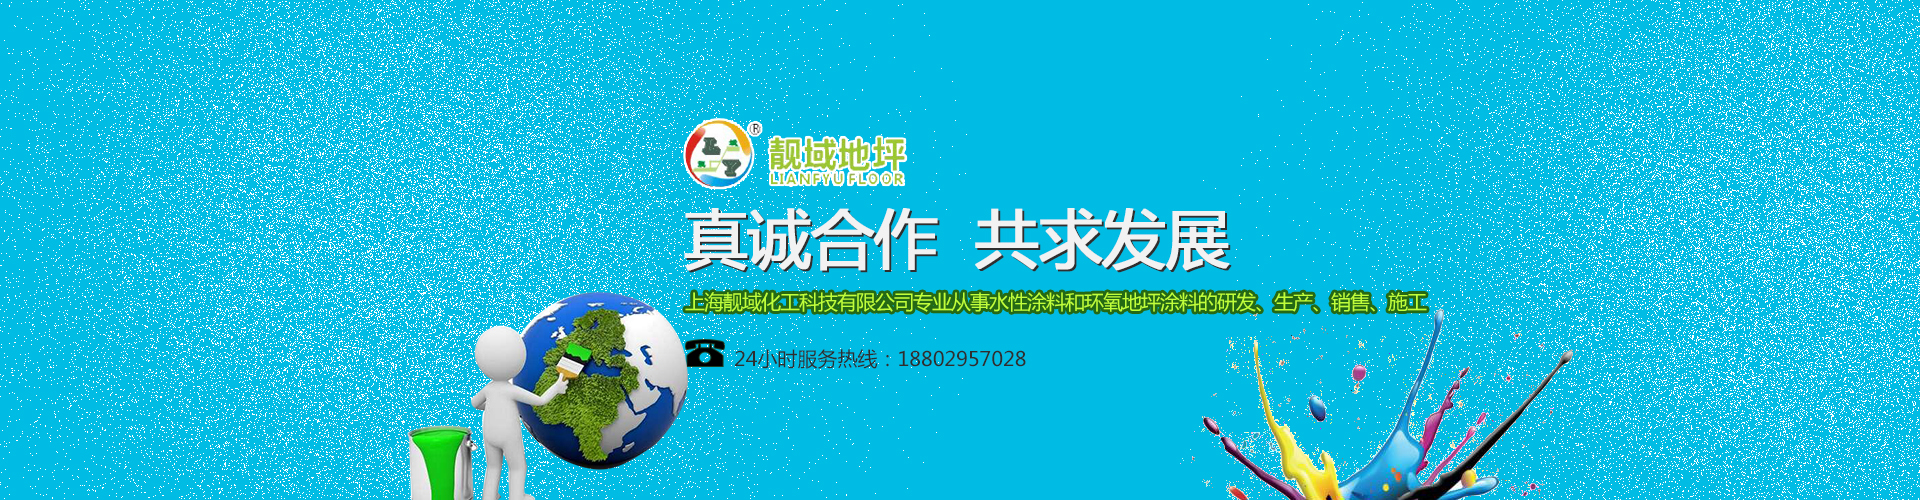 上海靓域化工科技有限公司西安分公司